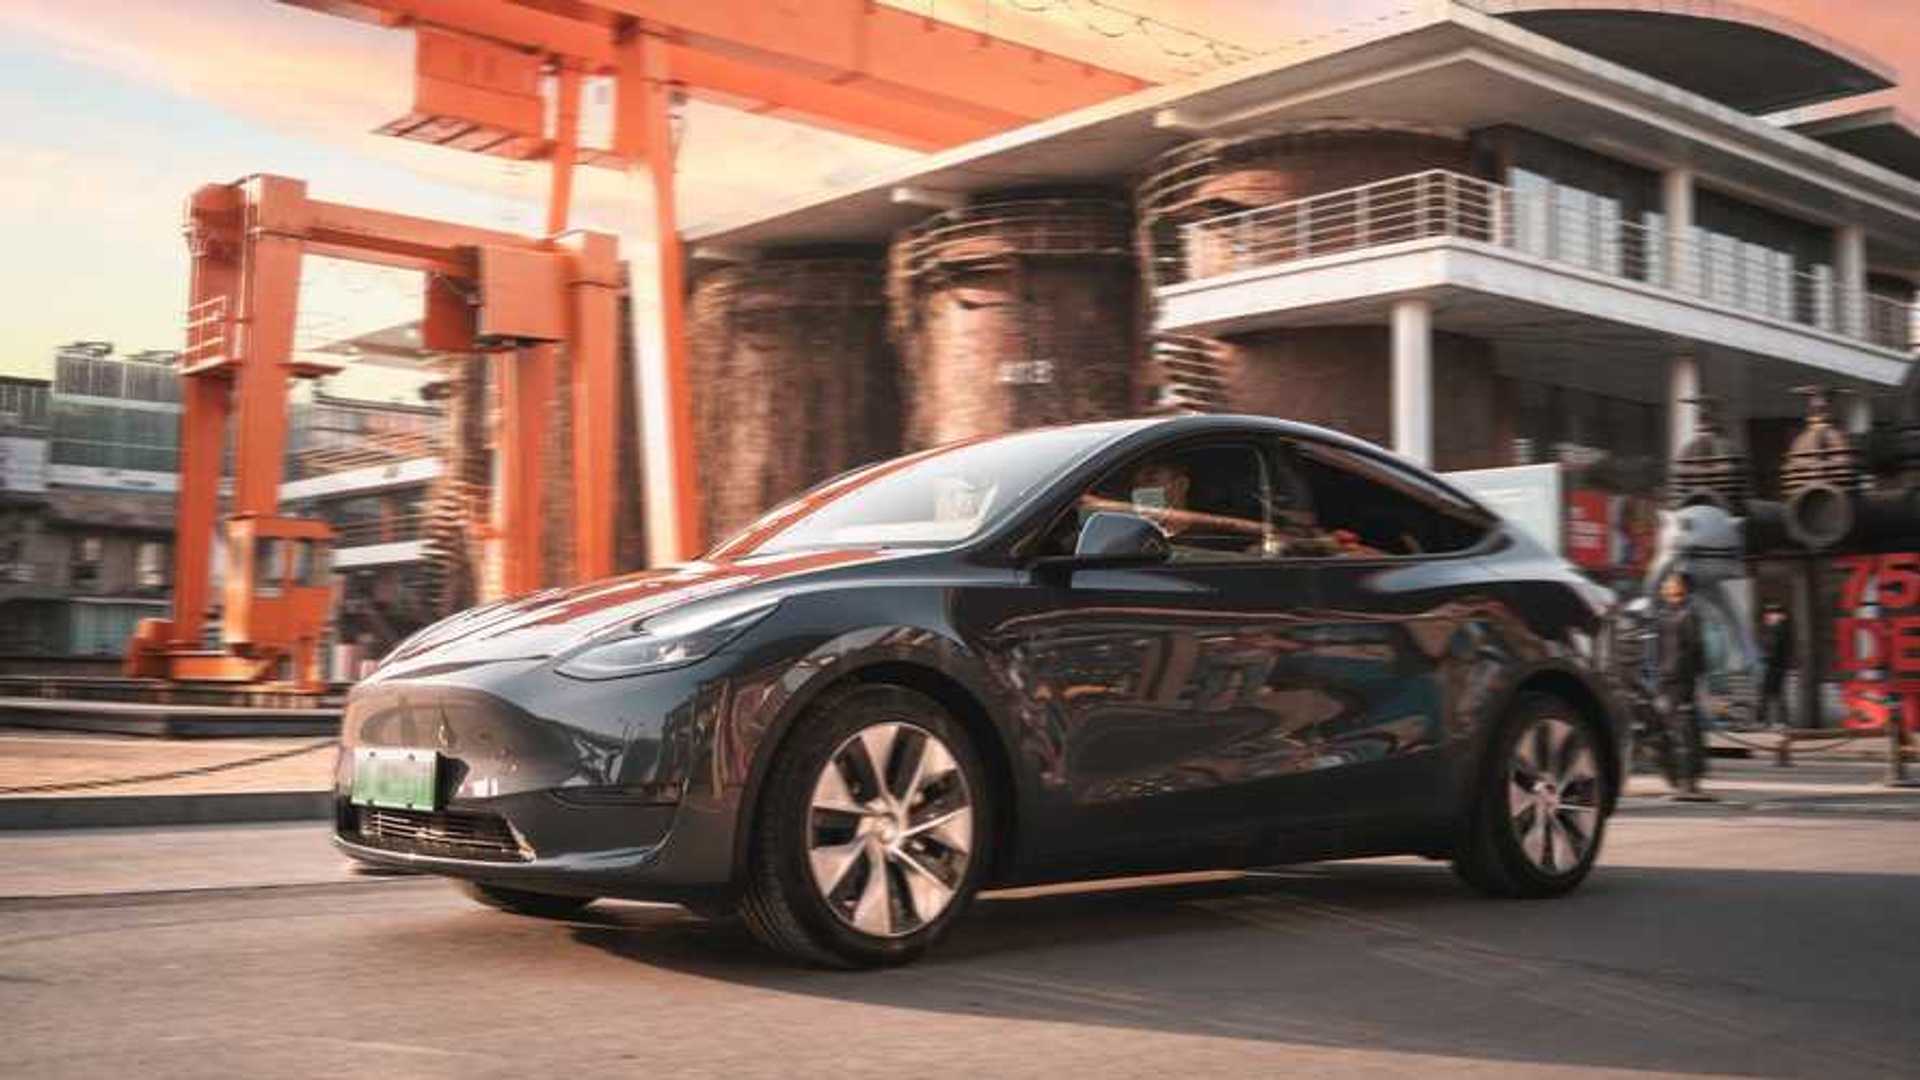 New mystery Tesla Model Y appears on EPA website